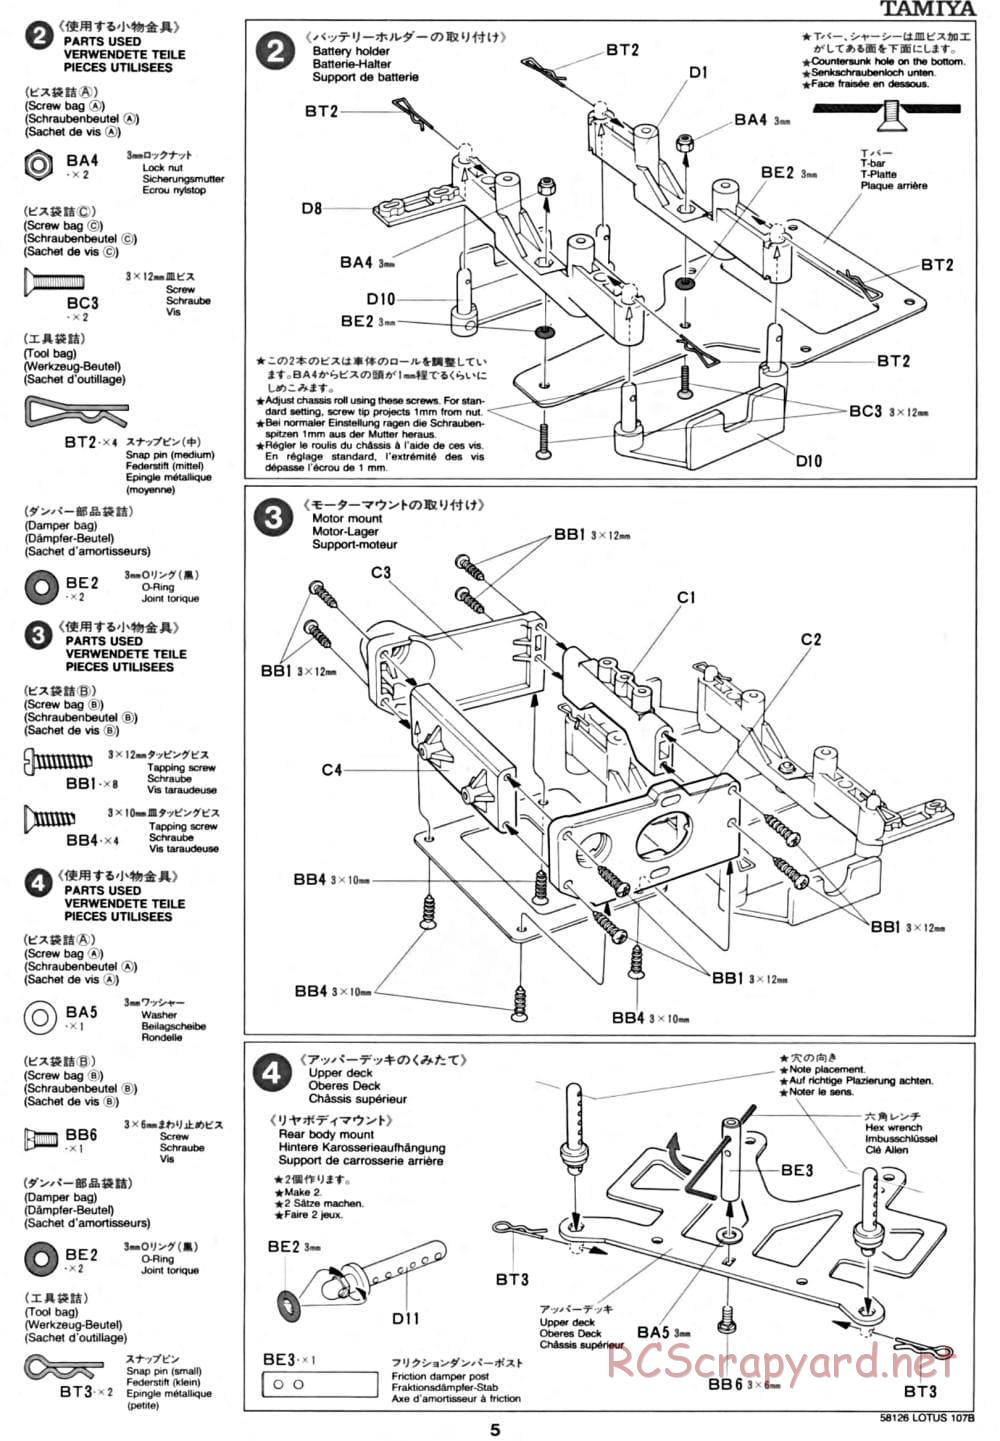 Tamiya - Lotus 107B Ford - F103 Chassis - Manual - Page 5